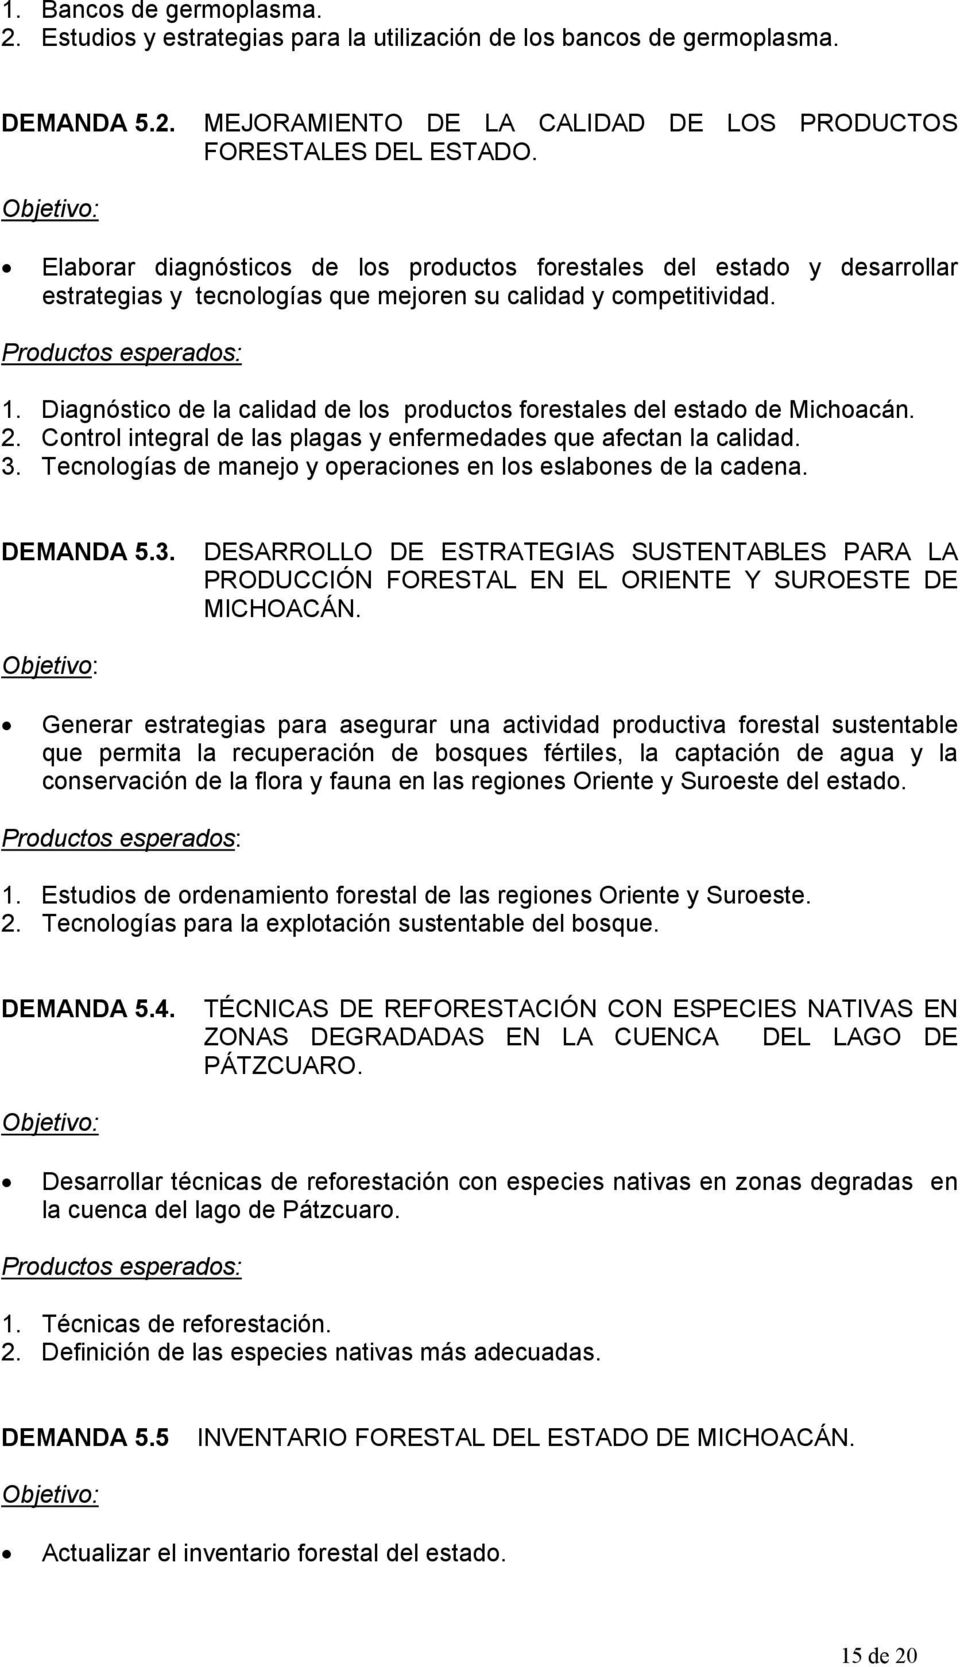 Diagnóstico de la calidad de los productos forestales del estado de Michoacán. 2. Control integral de las plagas y enfermedades que afectan la calidad. 3.